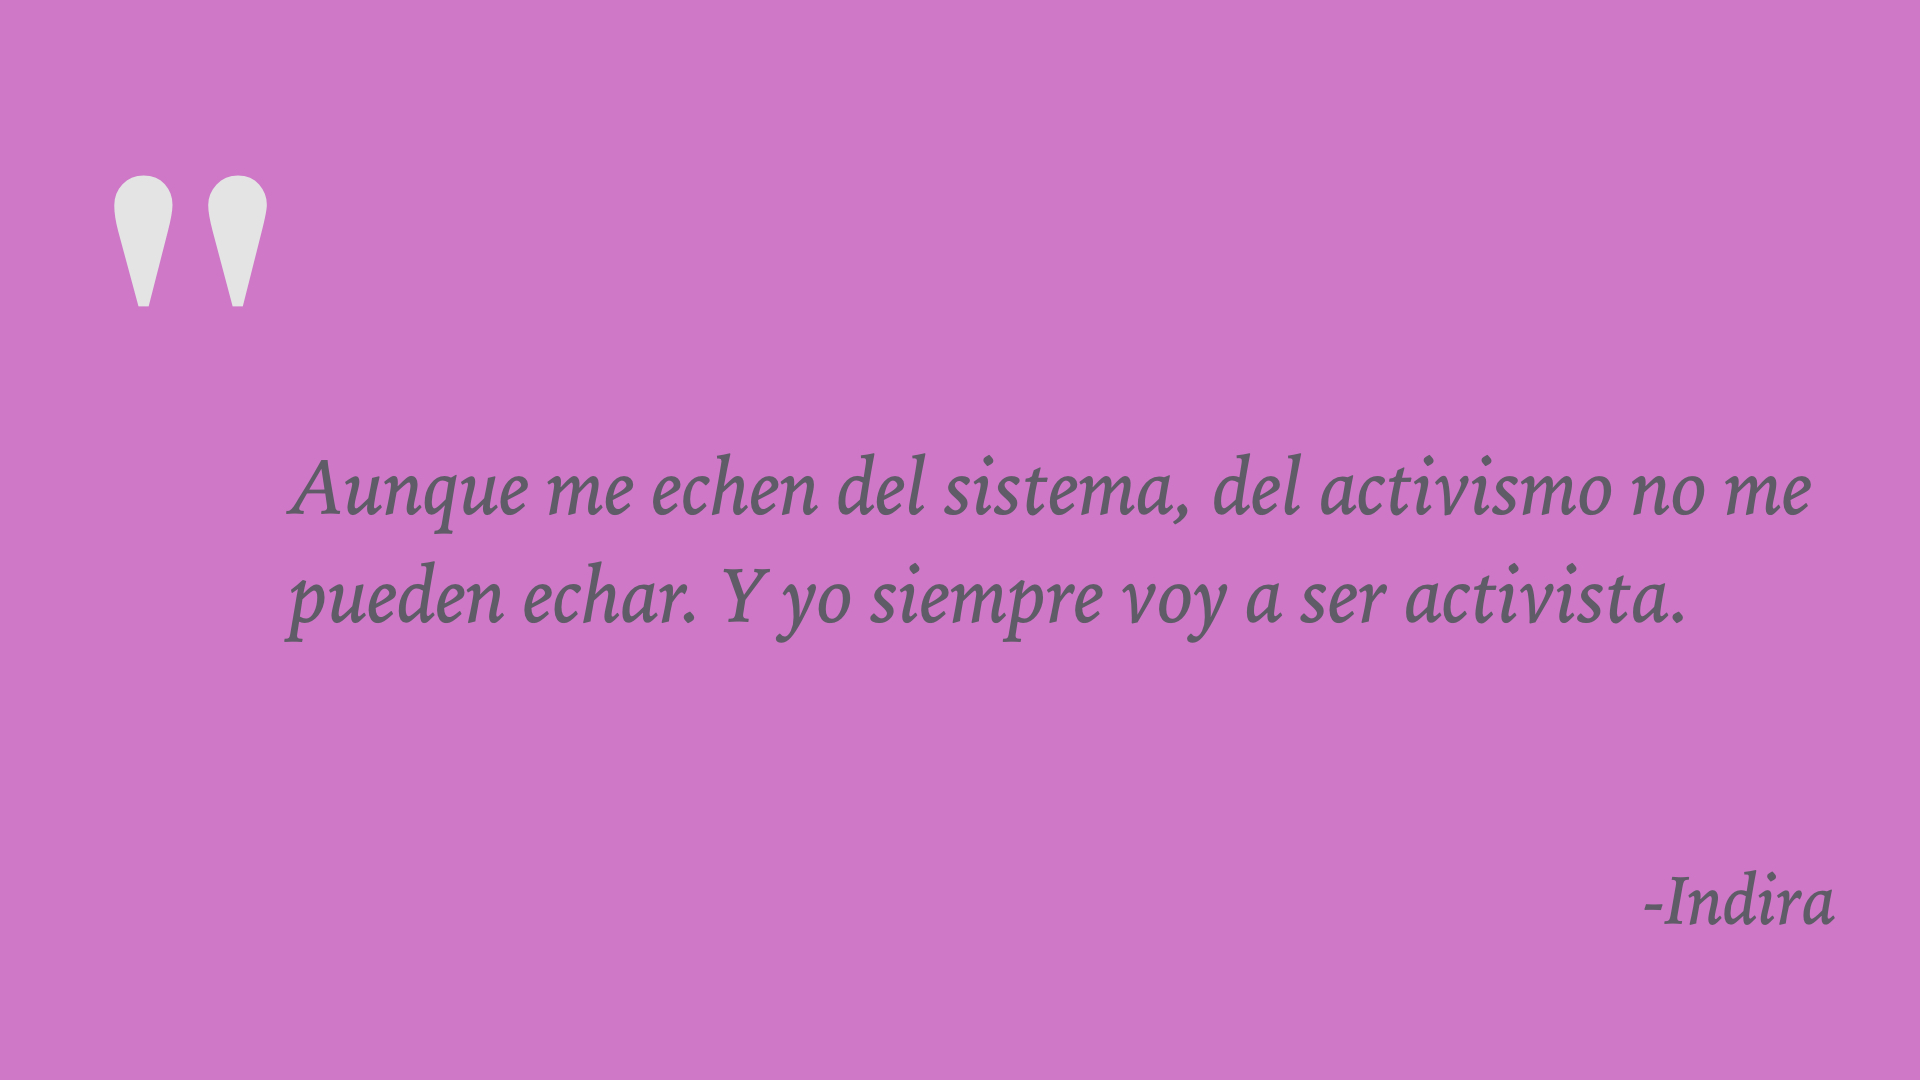 Recuadro con fondo rosa donde aparece escrito con letras grises: " Aunque me echen del sistema, del activismo no me pueden echar. Y yo siempre voy a ser activista” (Indira)